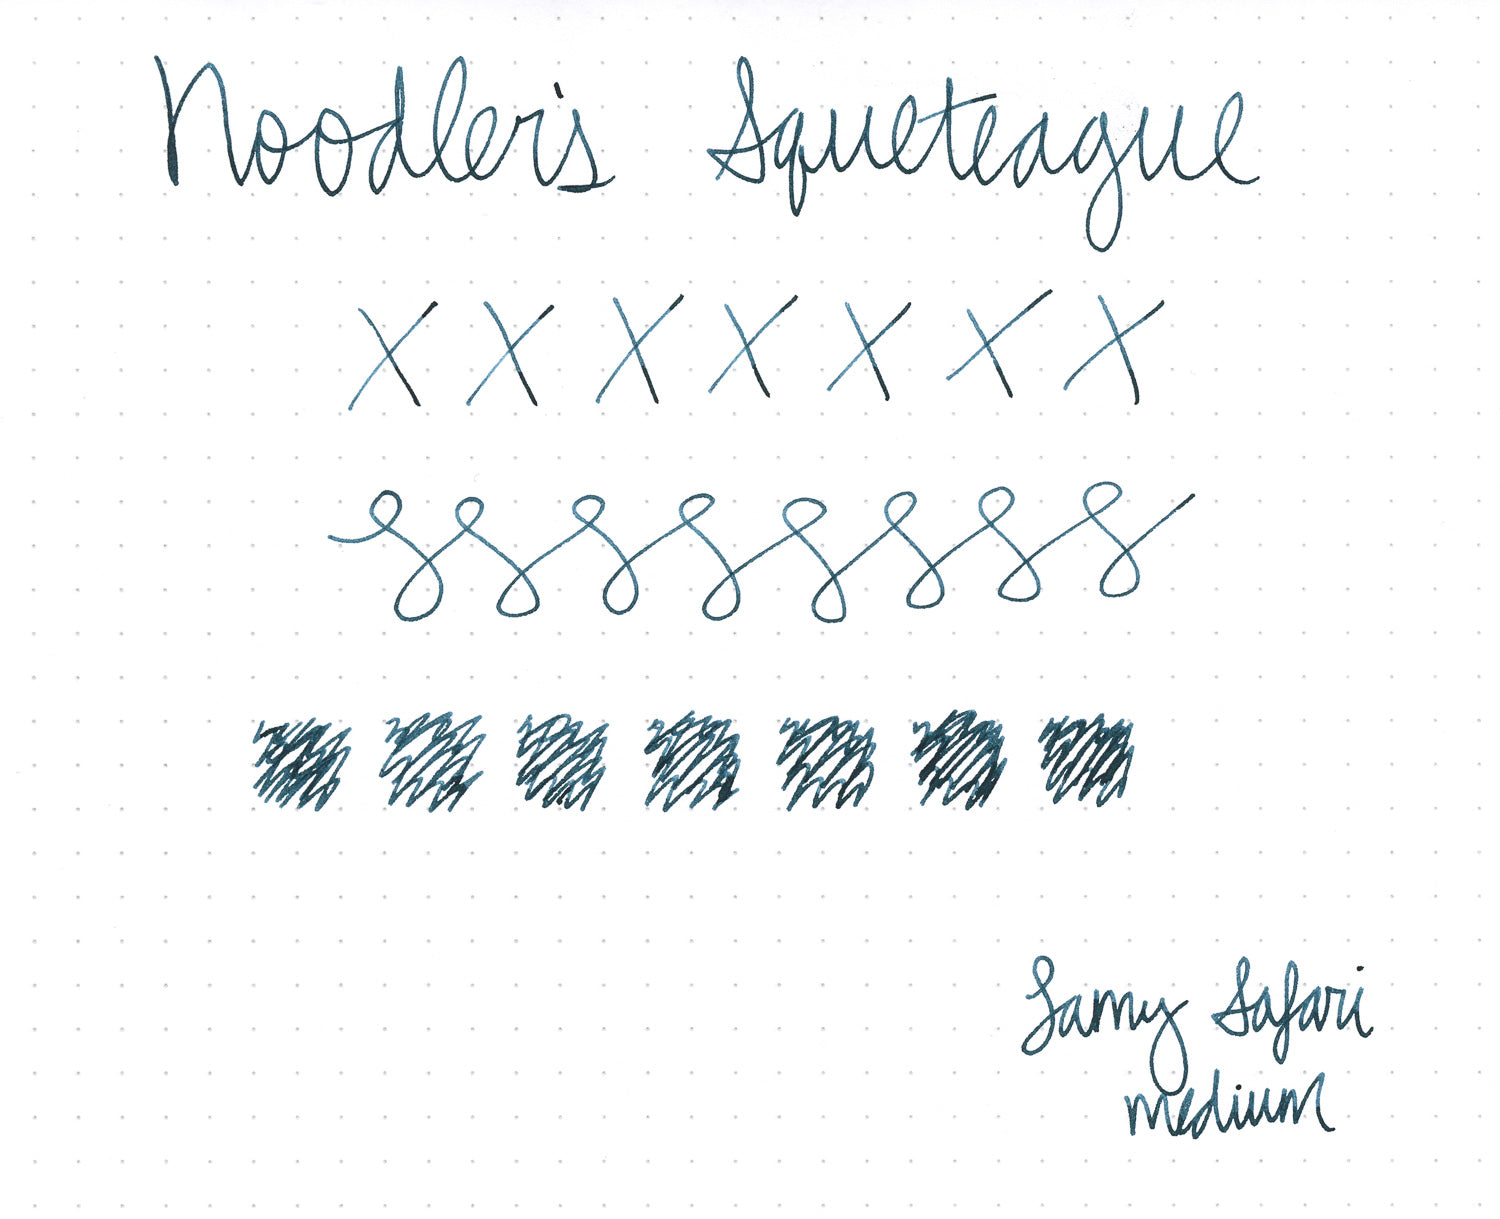  Noodler's Squeteague Ink - 3 oz Bottle